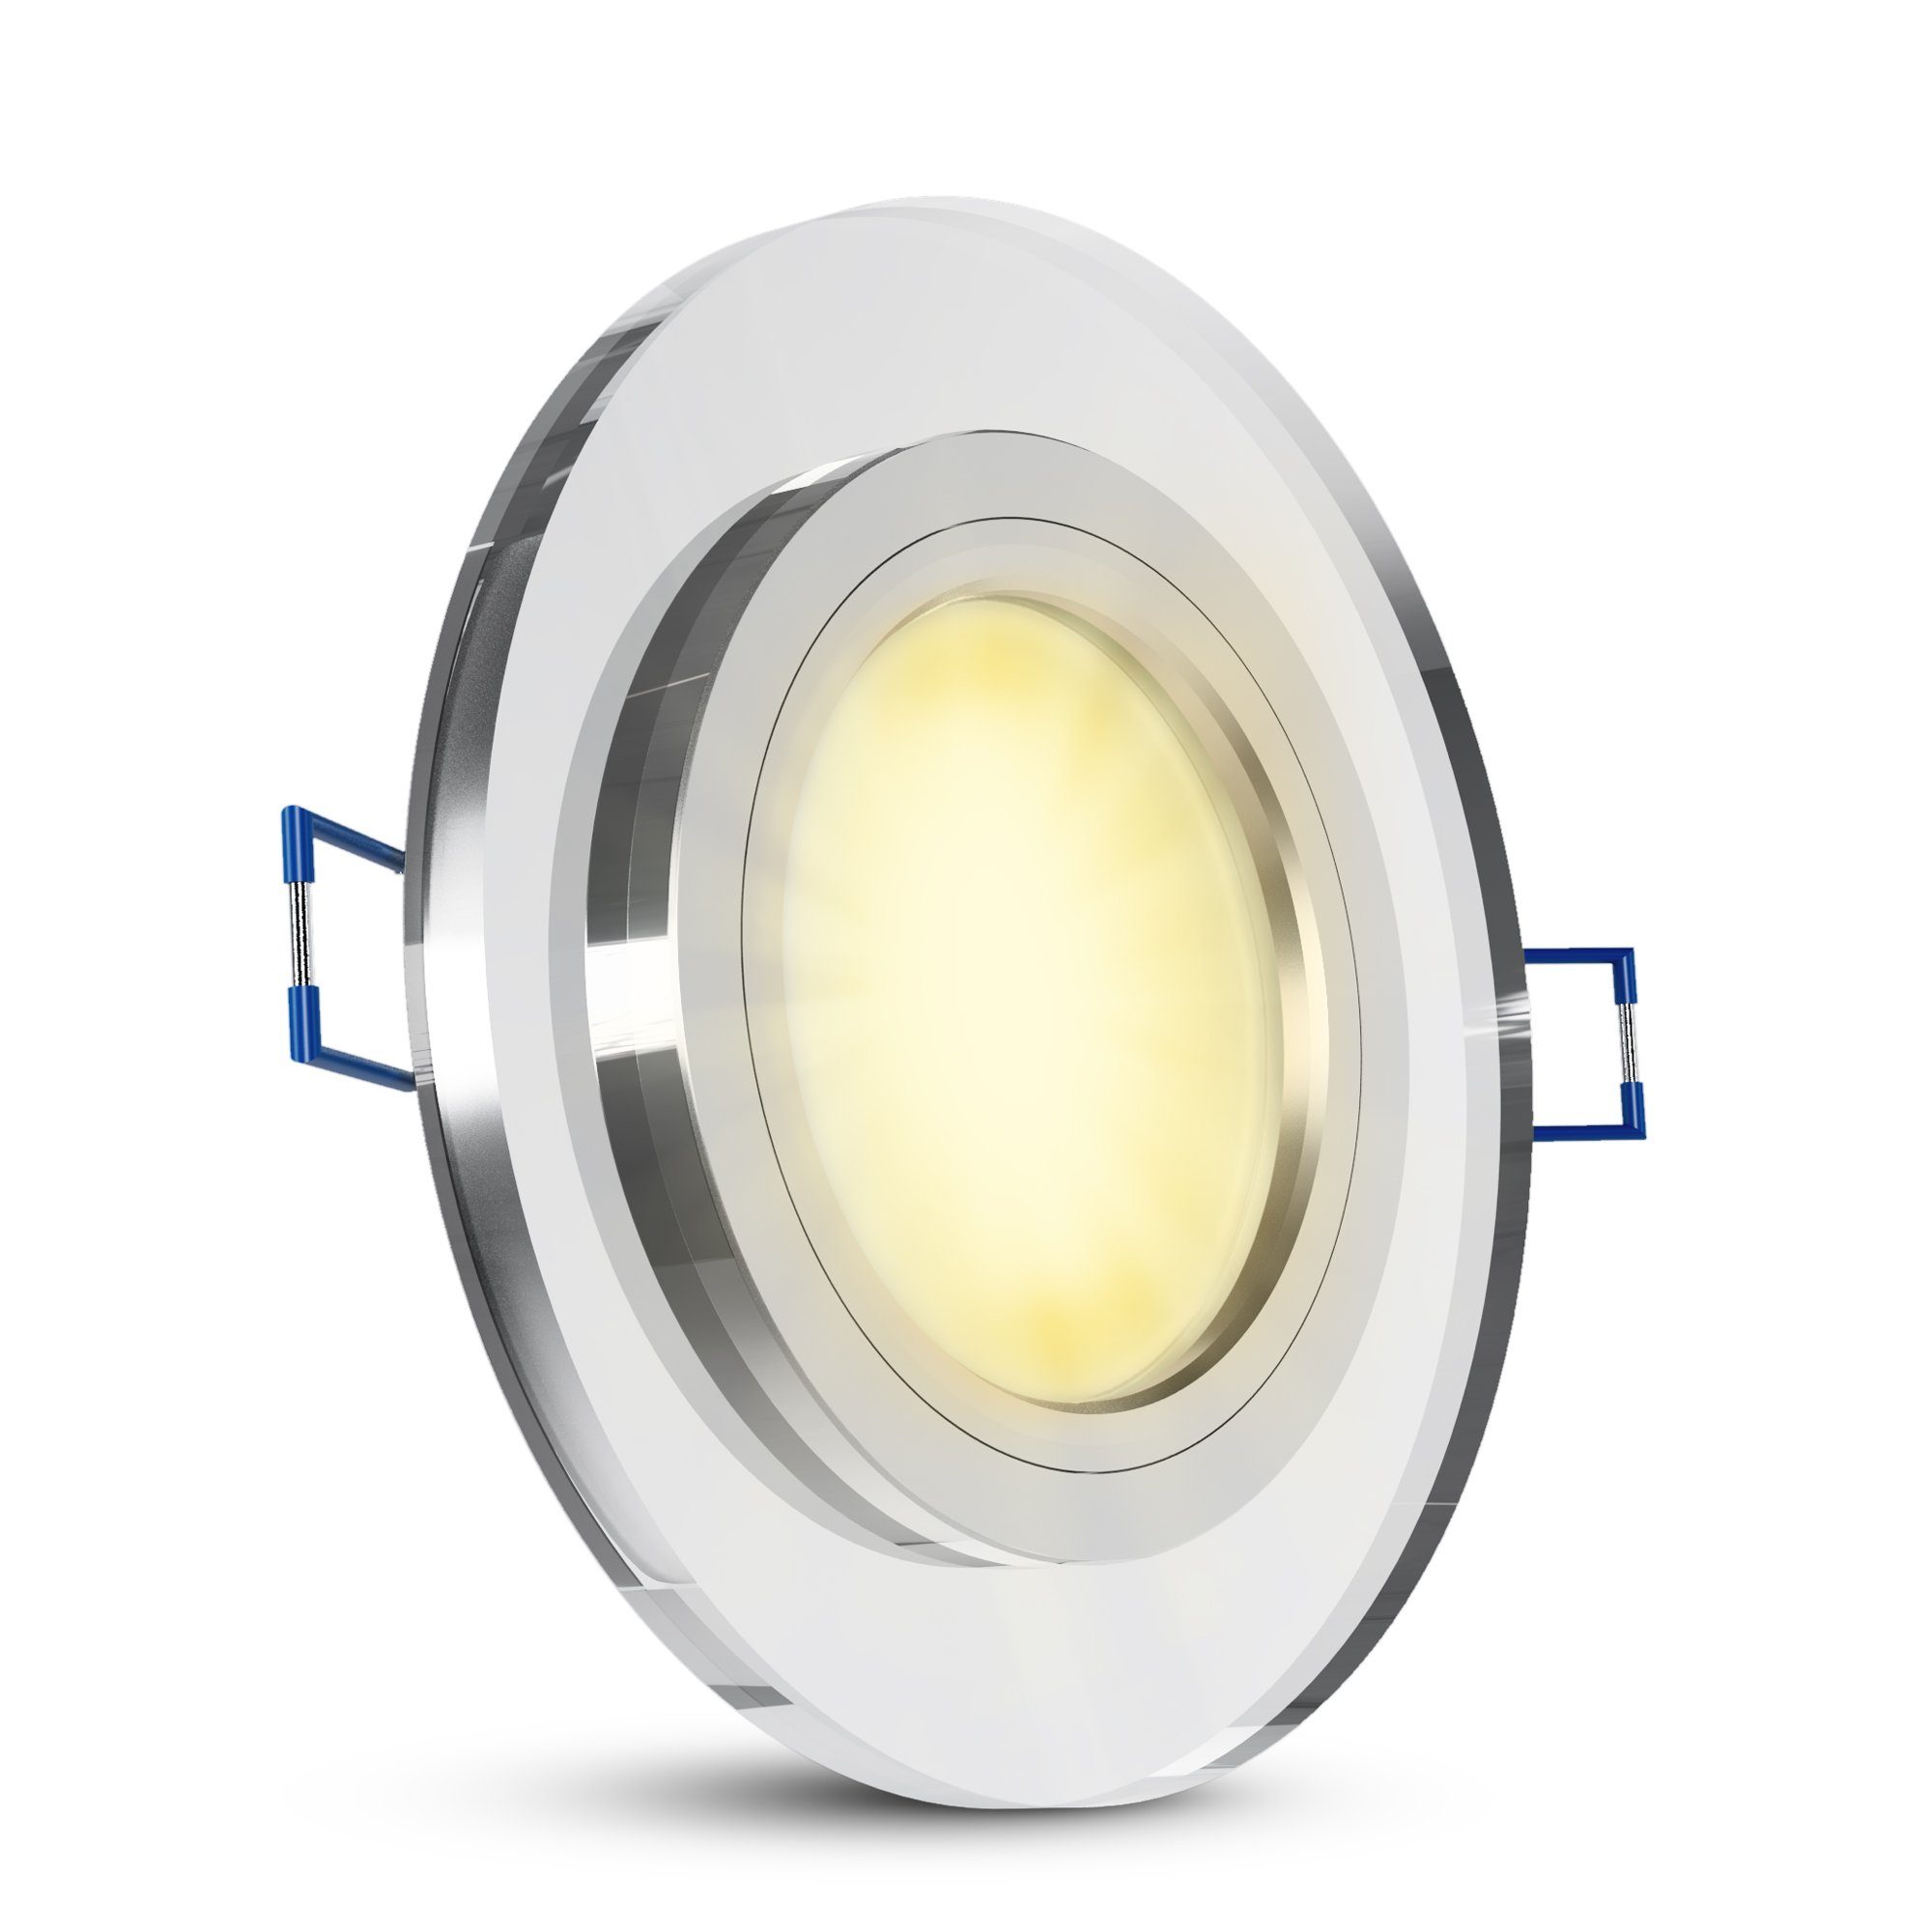 Flache LED-Modul, rund SSC-LUXon Einbauleuchte LED in Glas Einbaustrahler Warmweiß LED klar Design mit